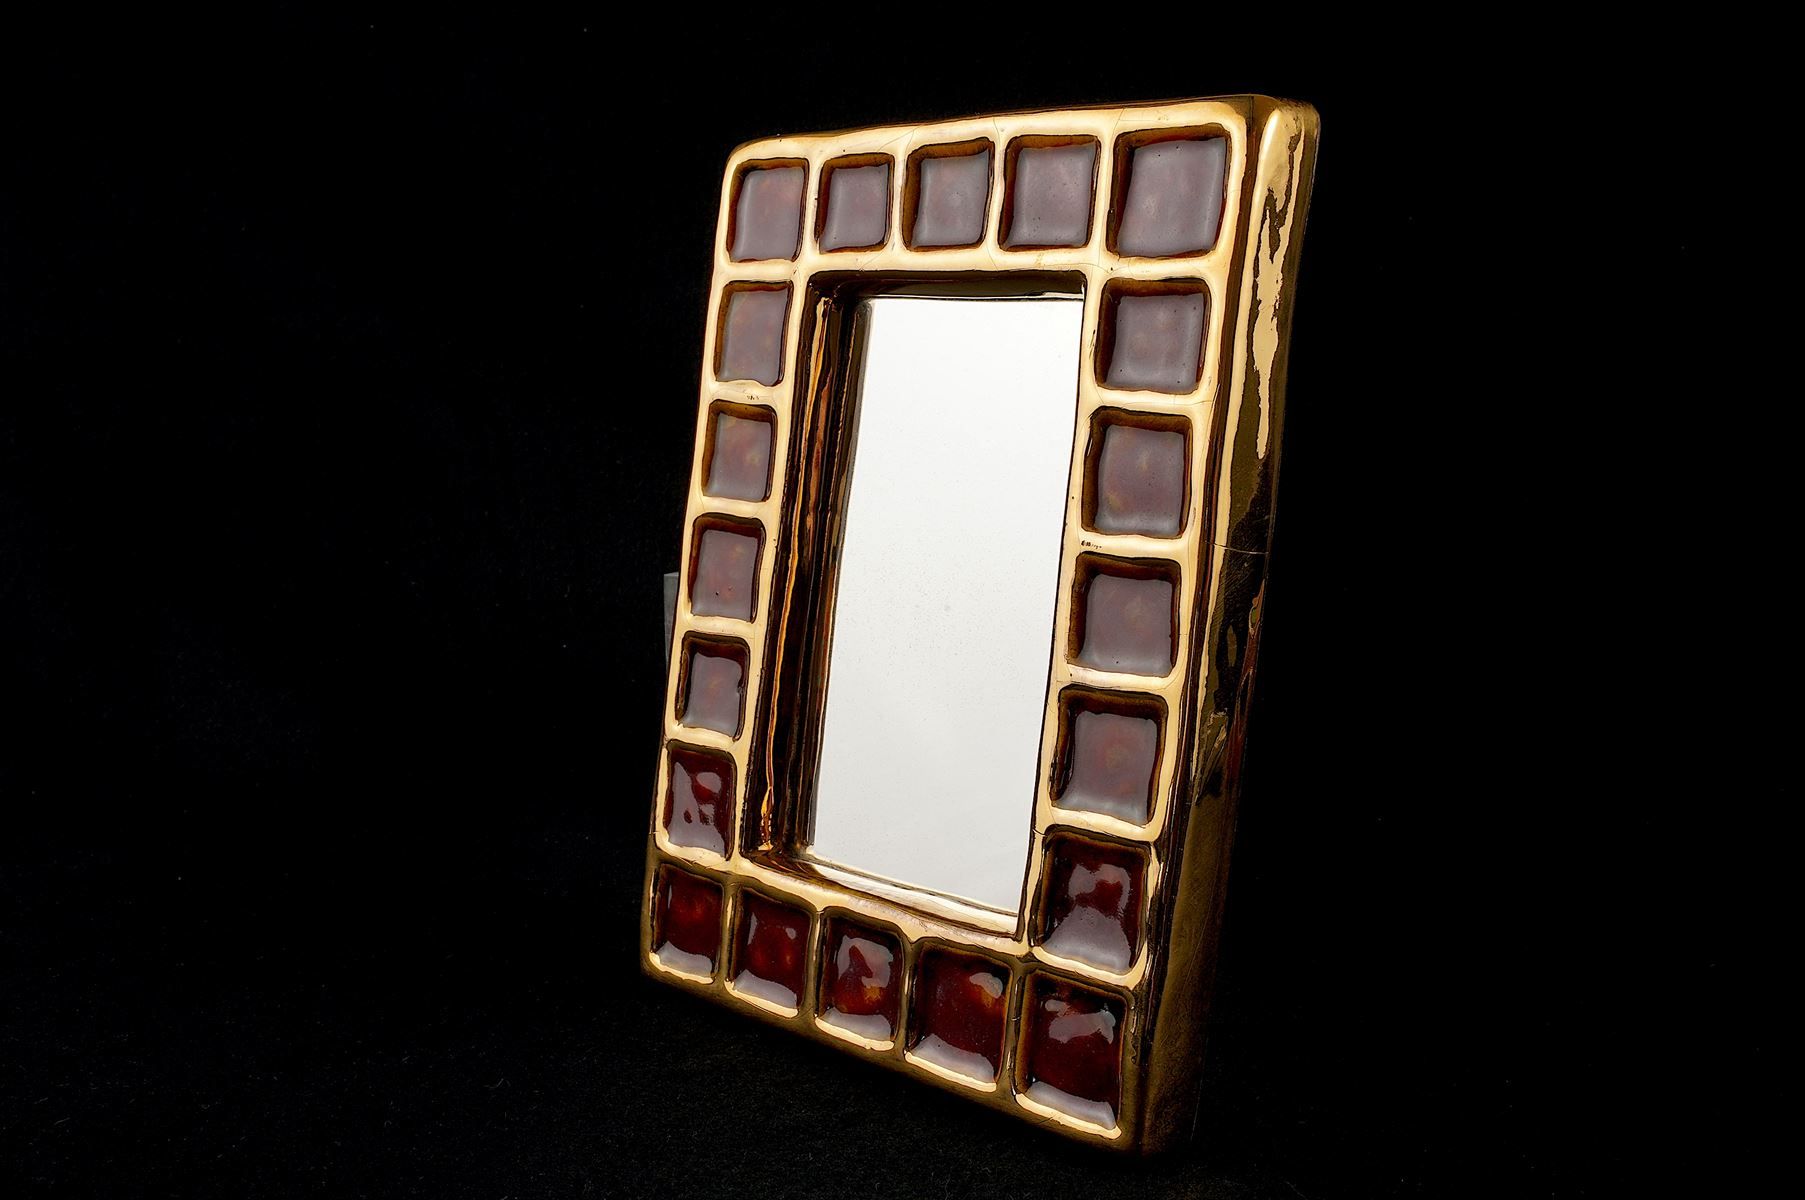 Null 弗朗索瓦-伦博（1930 - 2013）。长方形的金色和棕色的珐琅彩陶瓷镜。背面有签名。20.5 x 16厘米。